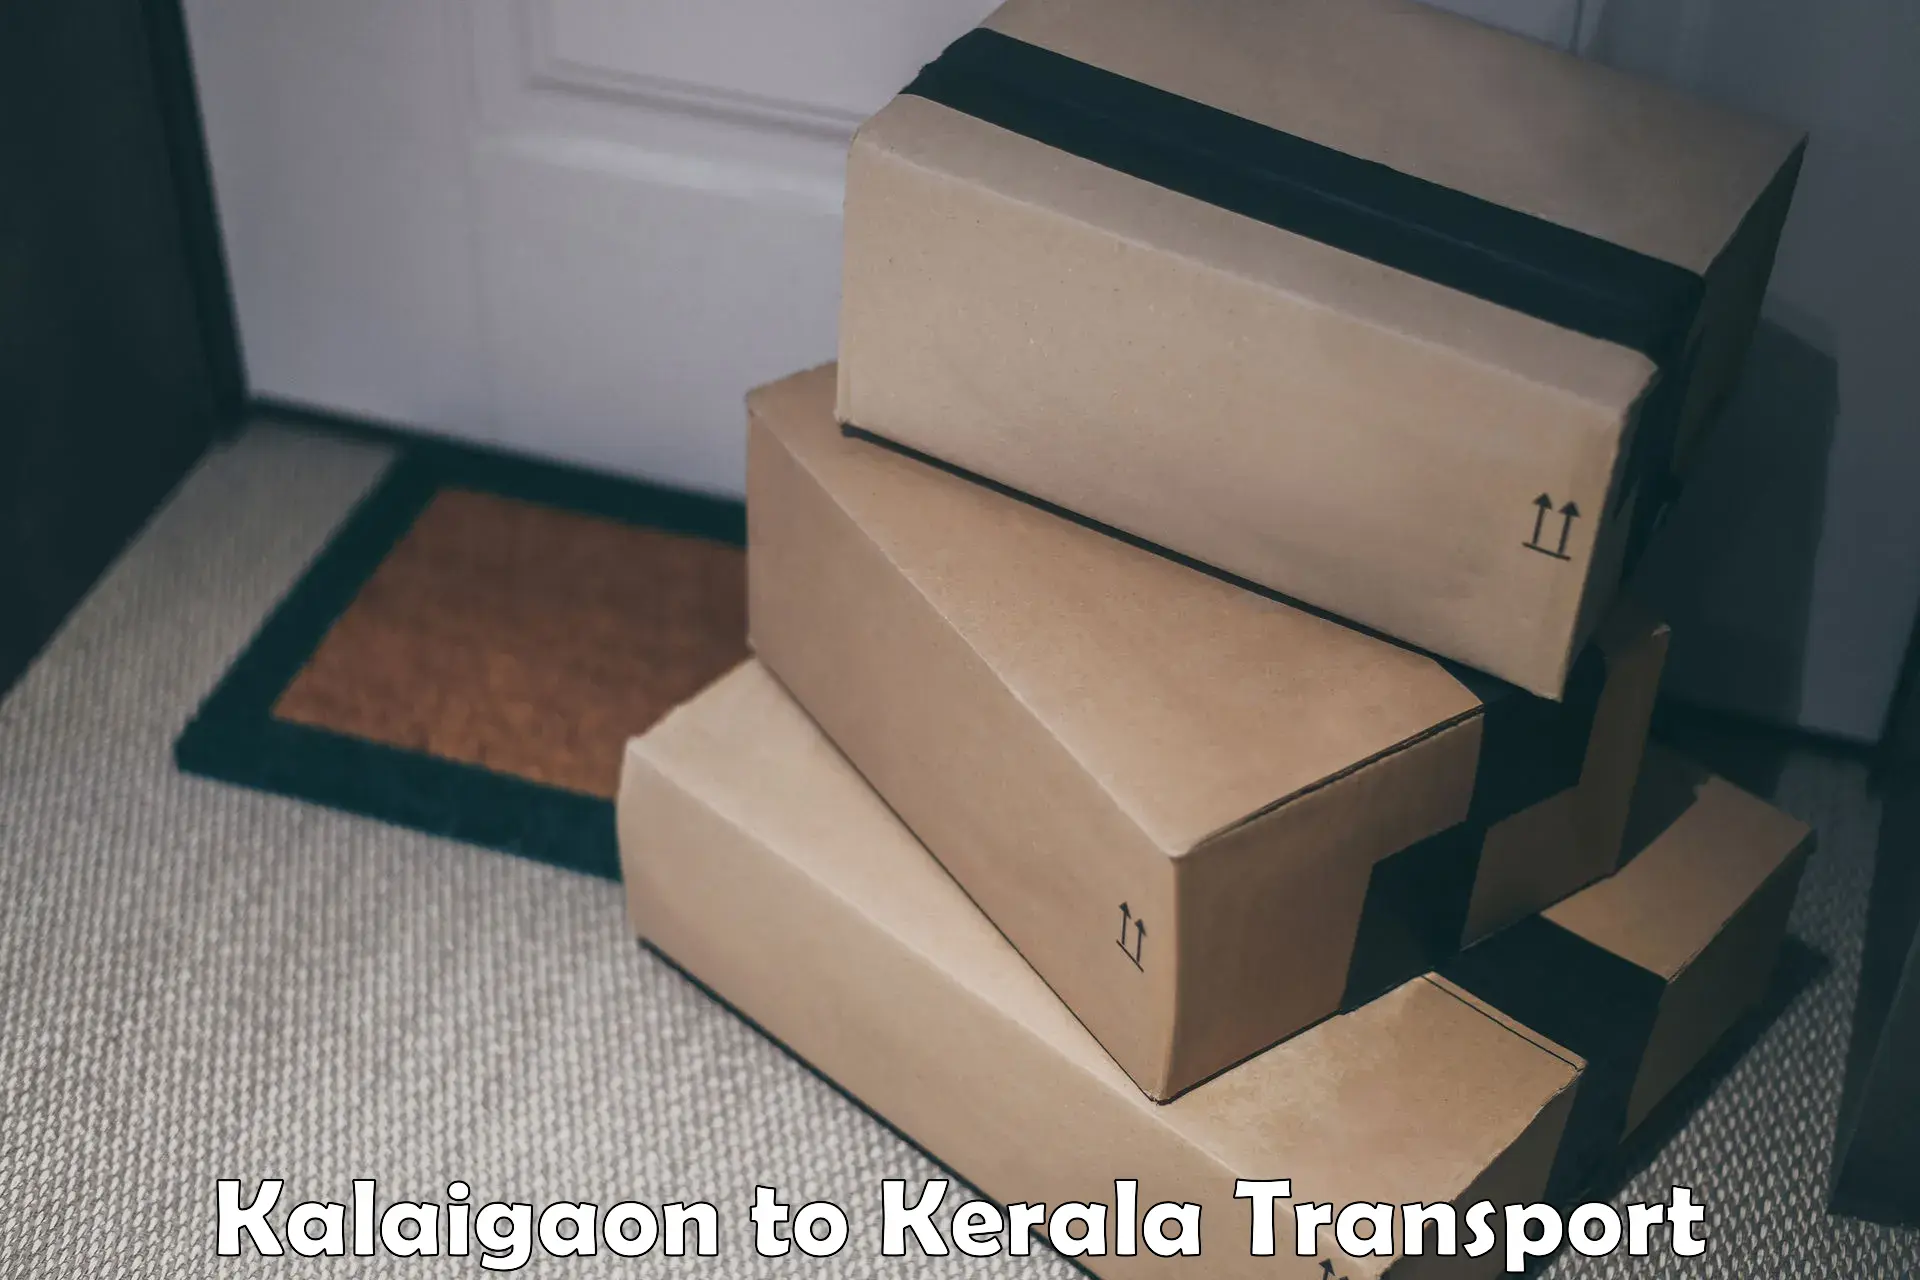 Nearby transport service Kalaigaon to Taliparamba